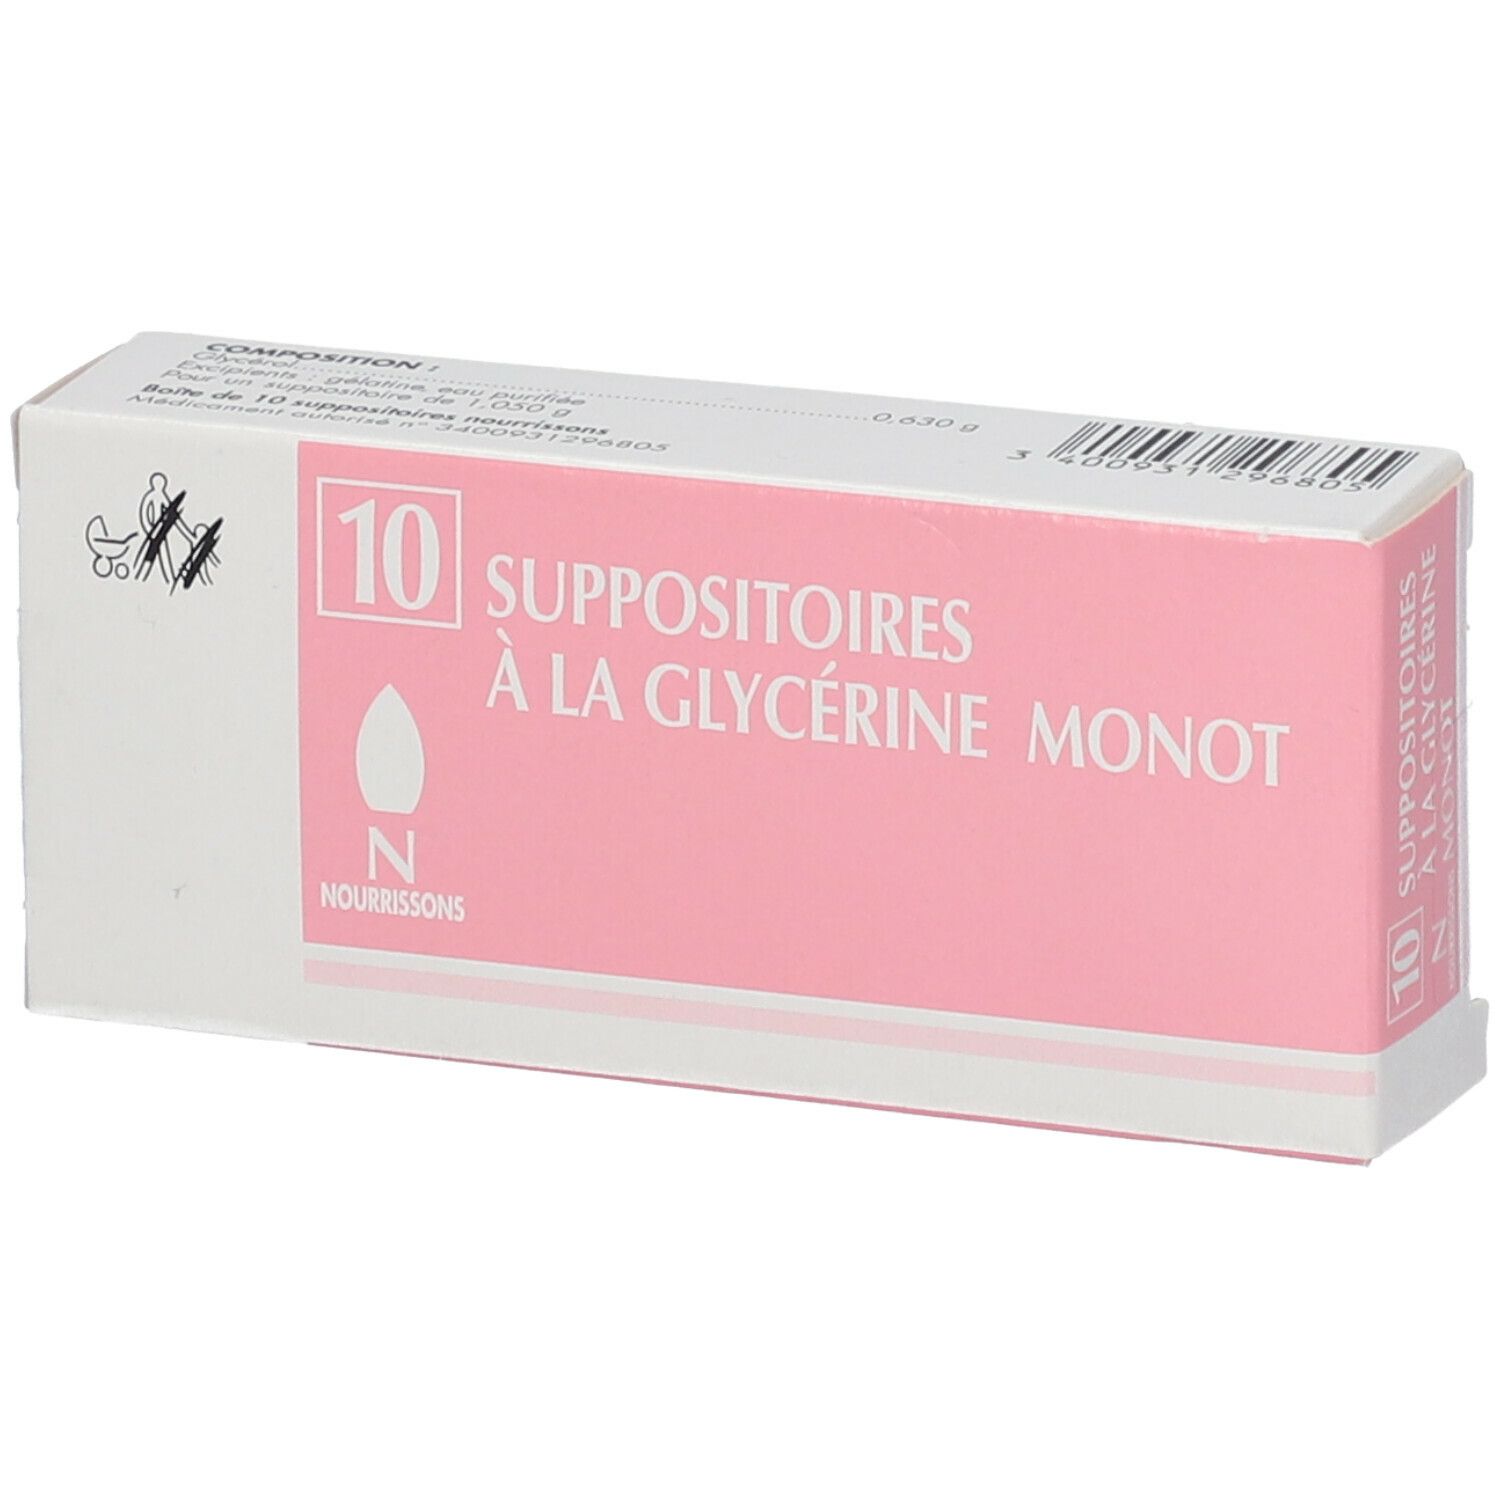 Merck Suppositoires à la Glycérine Monot Nourisson